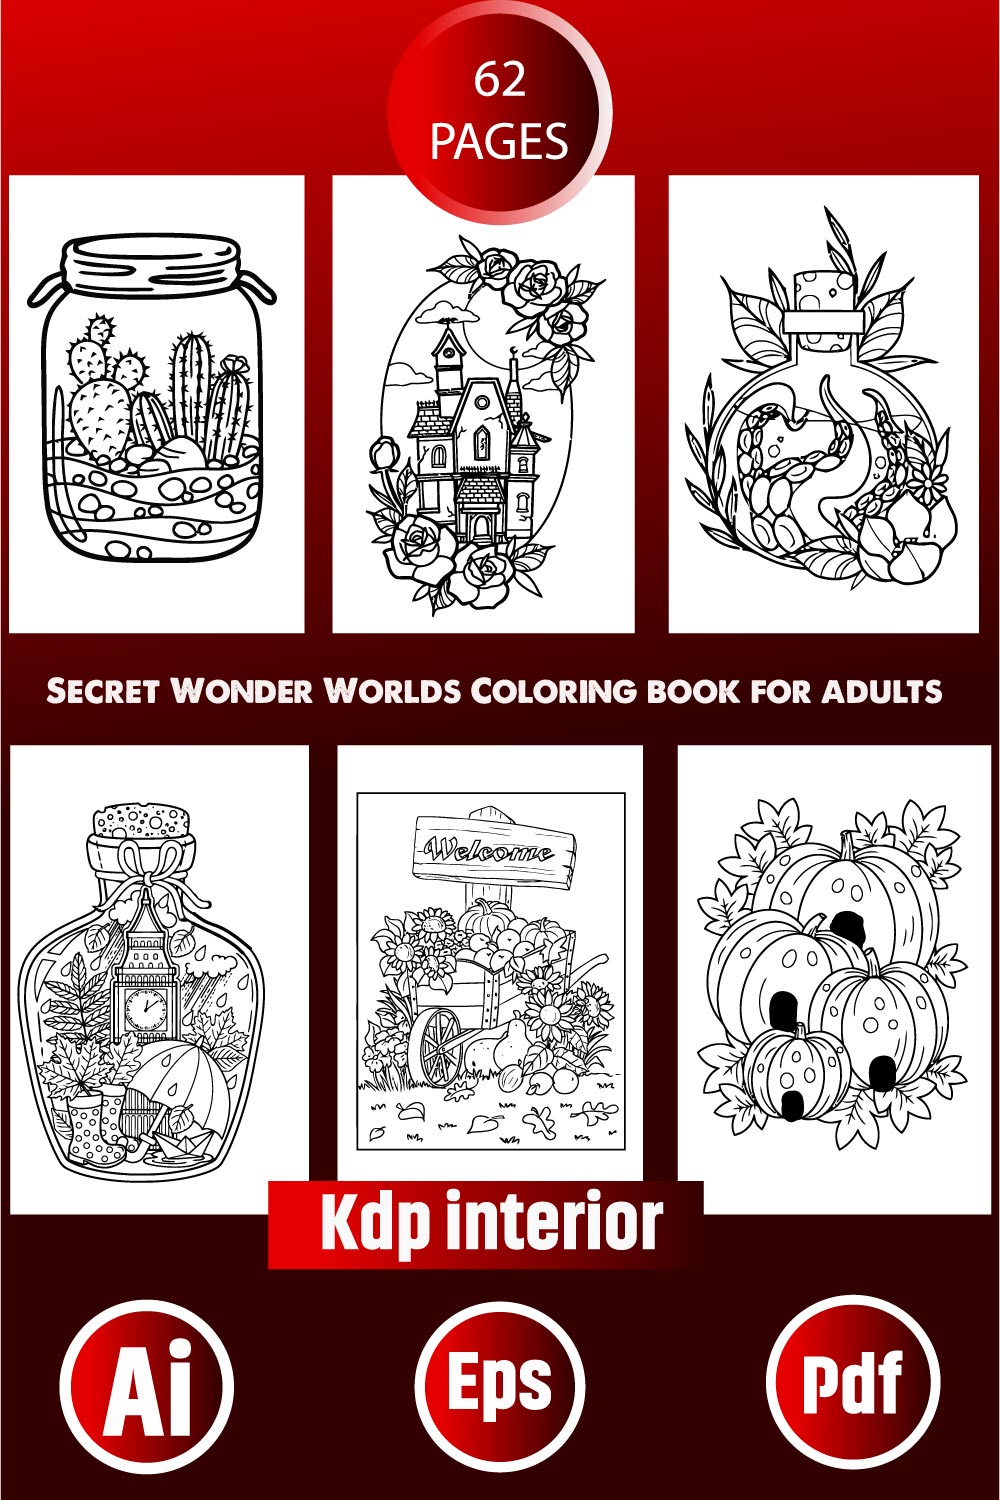 Secret Wonder Worlds Coloring Book for Adults pinterest image.